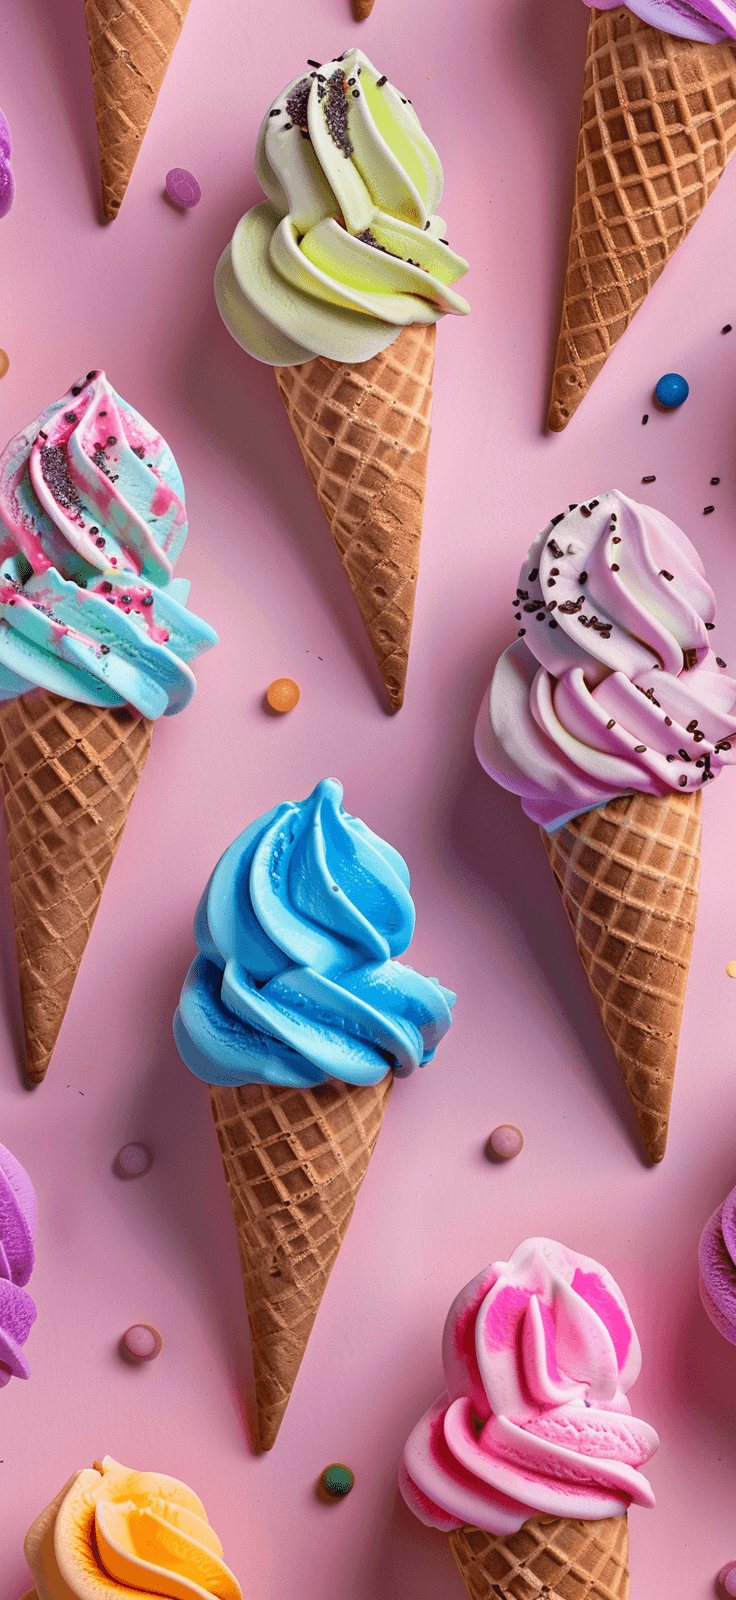 colorful ice cream cones - summer iPhone wallpaper